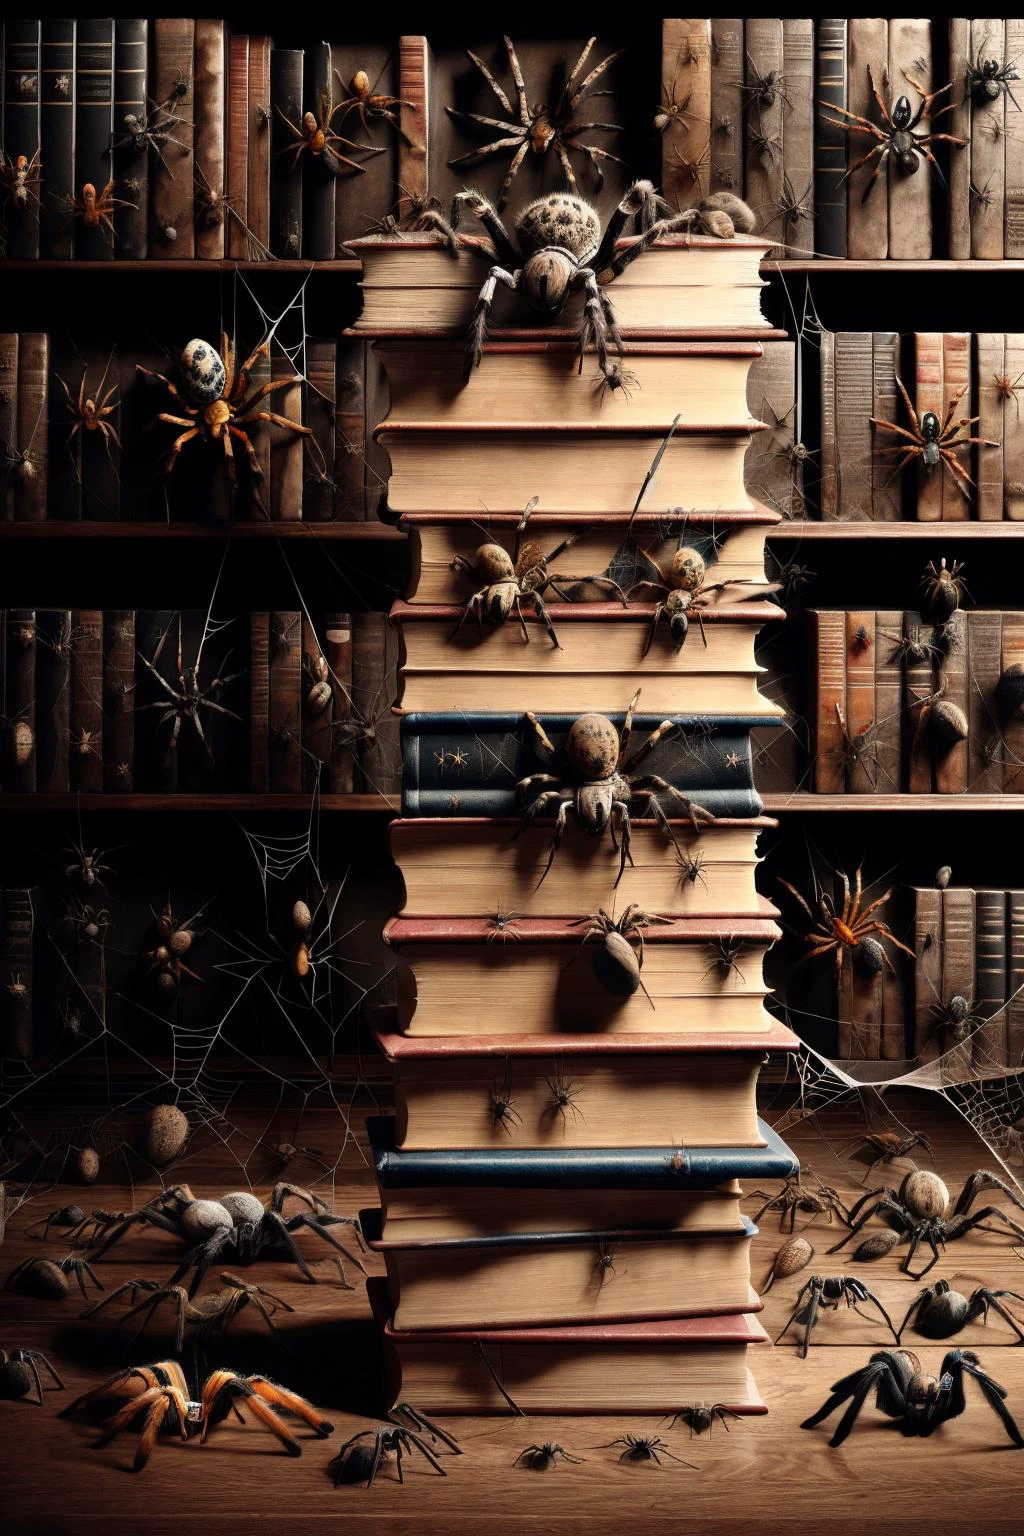 책더미 위의 Ais-spiderz, 조용한 도서관에서 